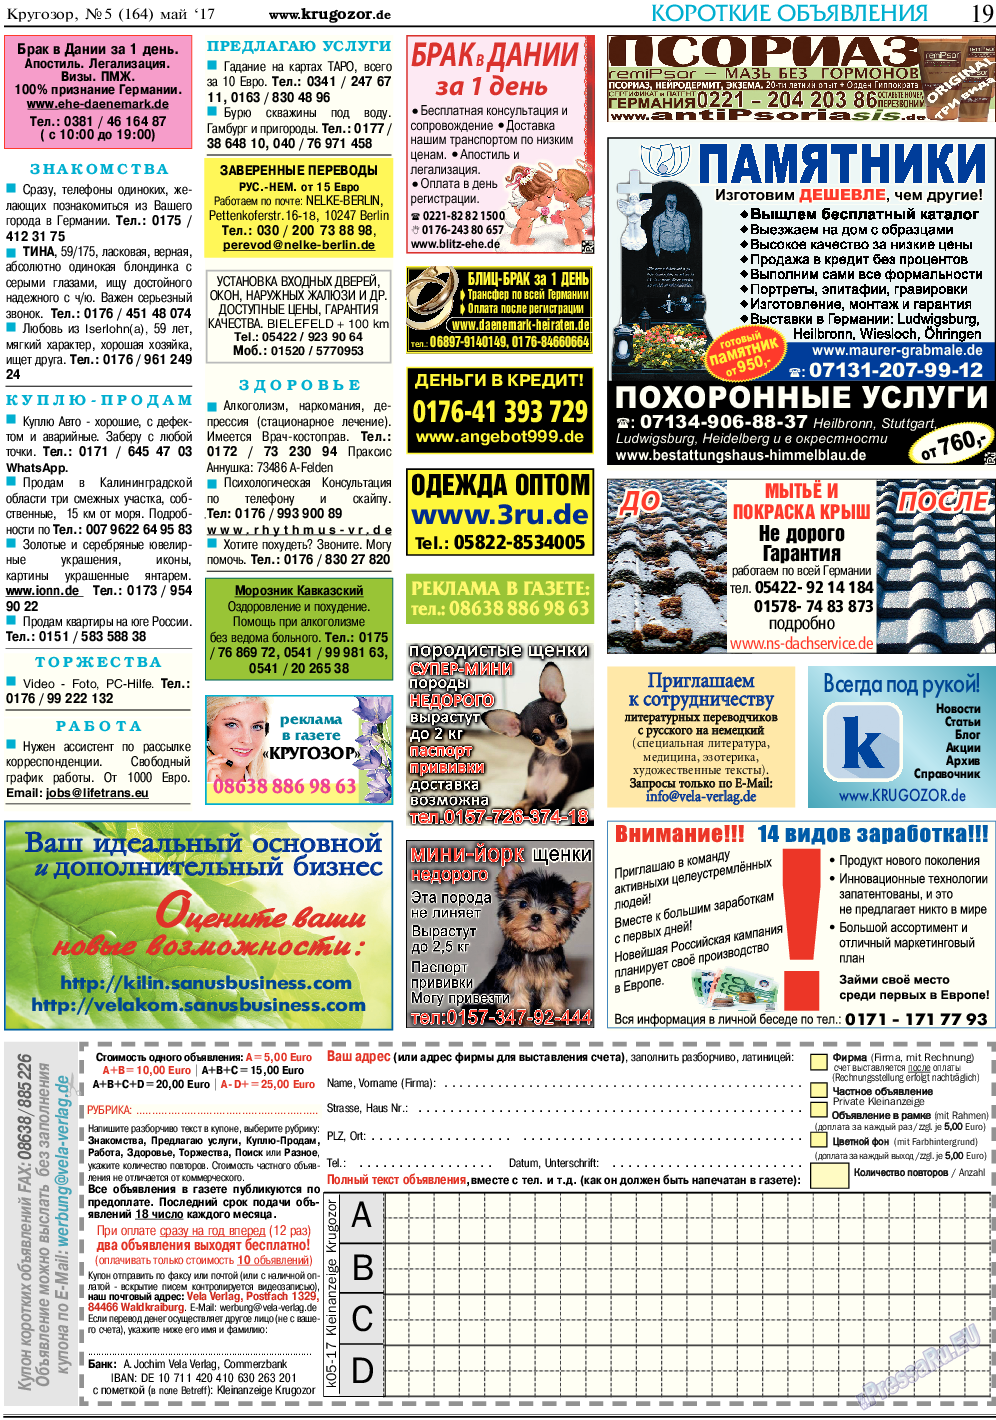 Кругозор, газета. 2017 №5 стр.19